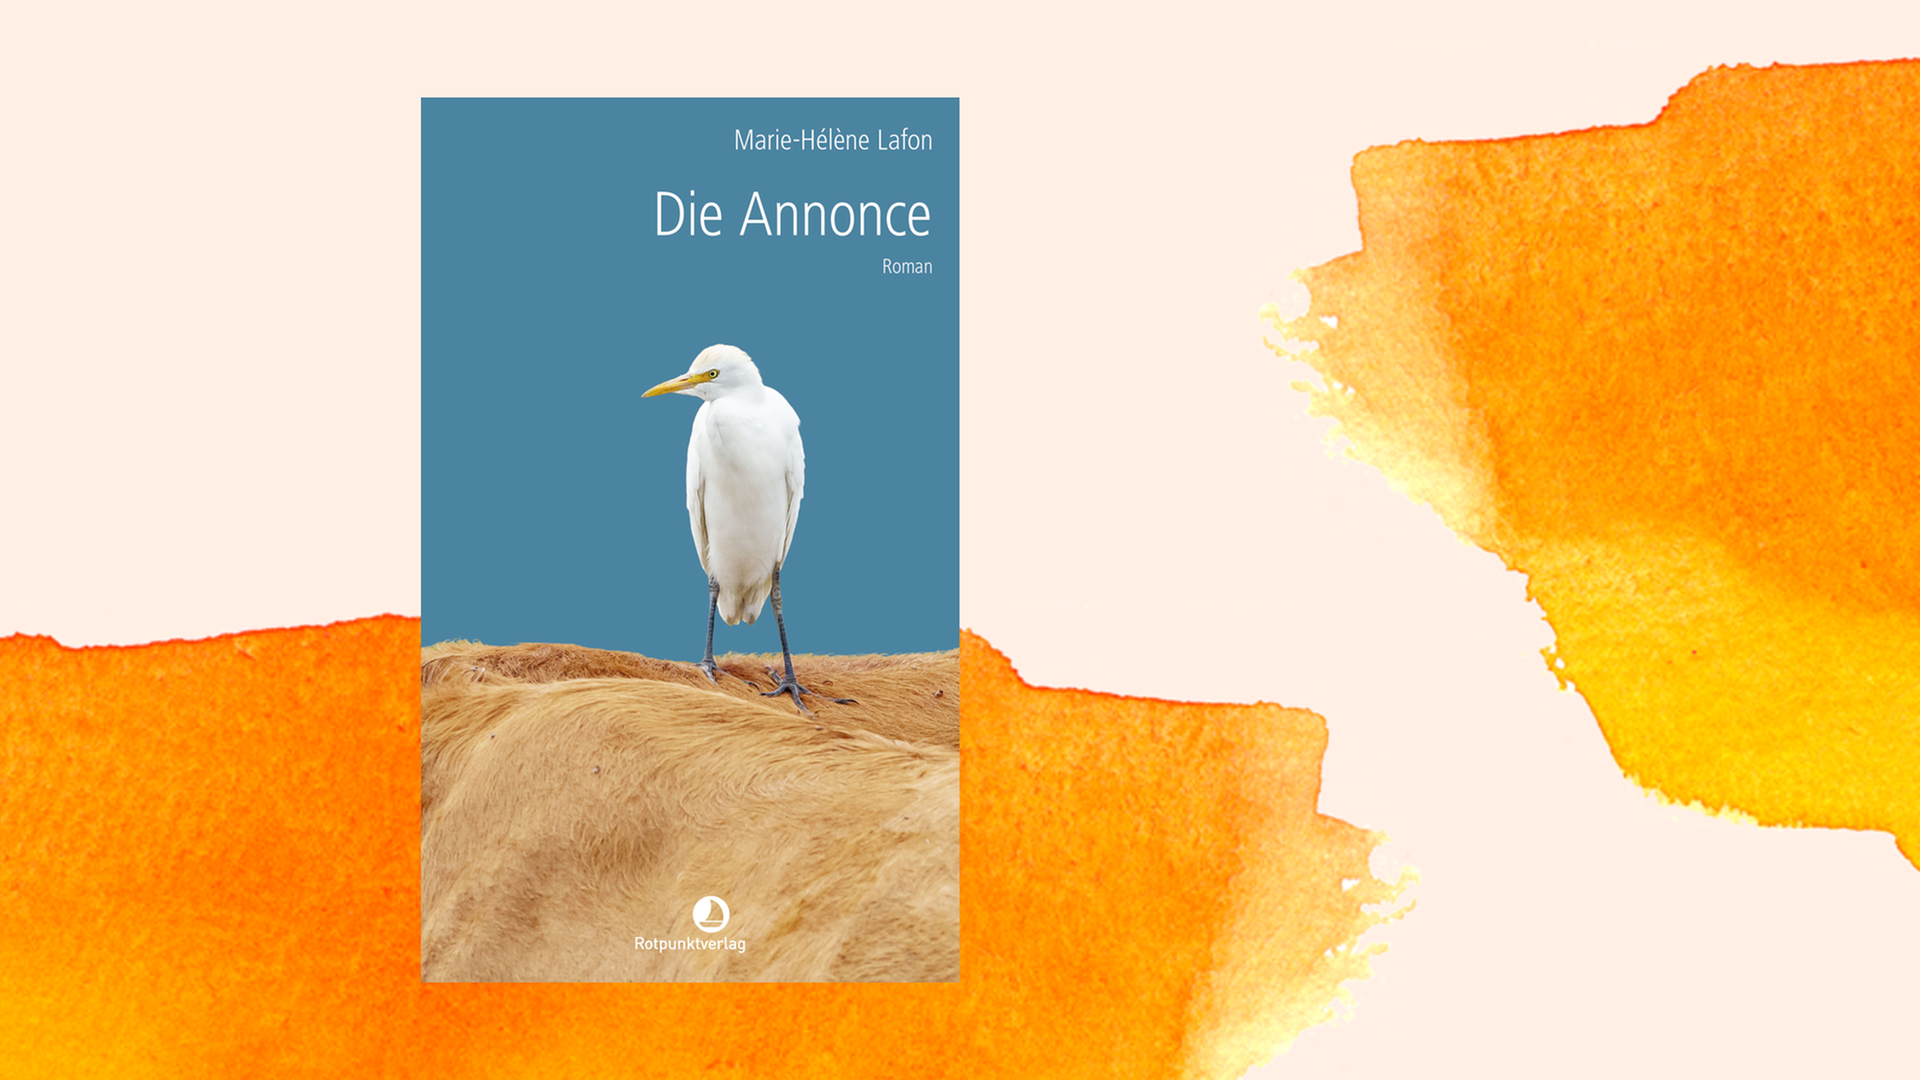 Buchcover zu "Die Annonce" von Marie-Hélène Lafon auf orangefarbenem Aquarellhintergrund.